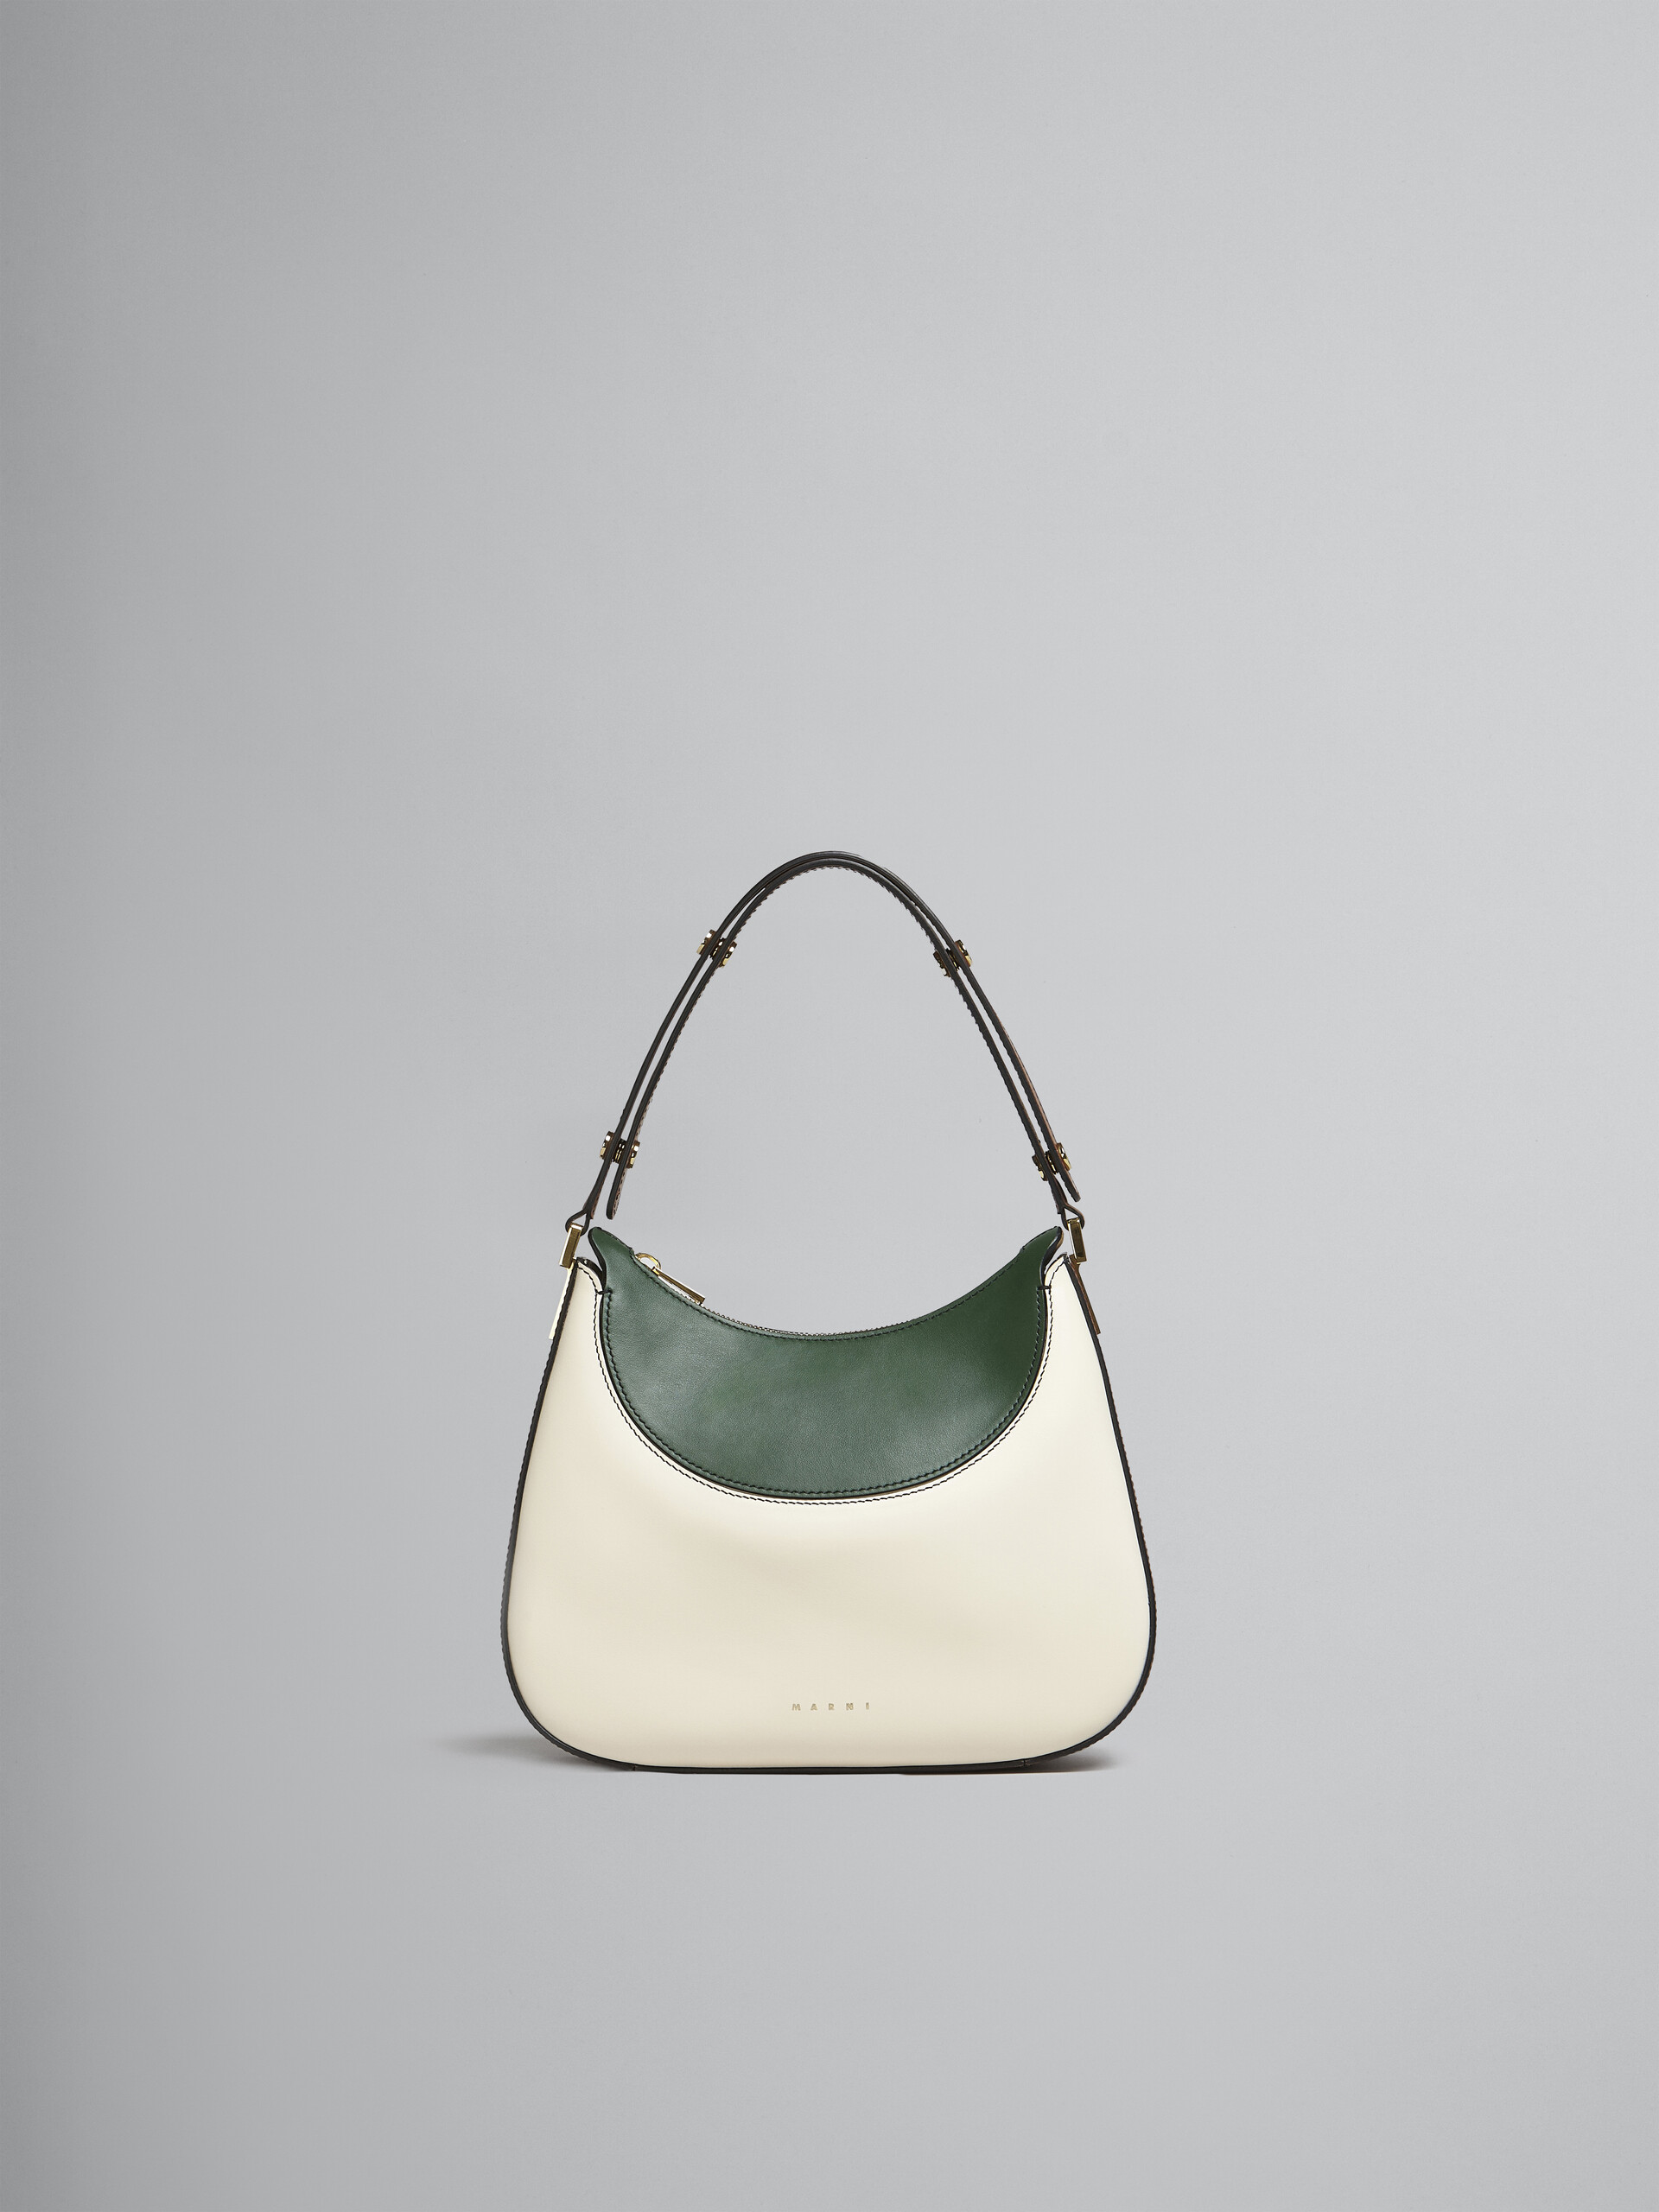 Petit sac Milano en cuir blanc, marron et vert - Sacs à main - Image 1